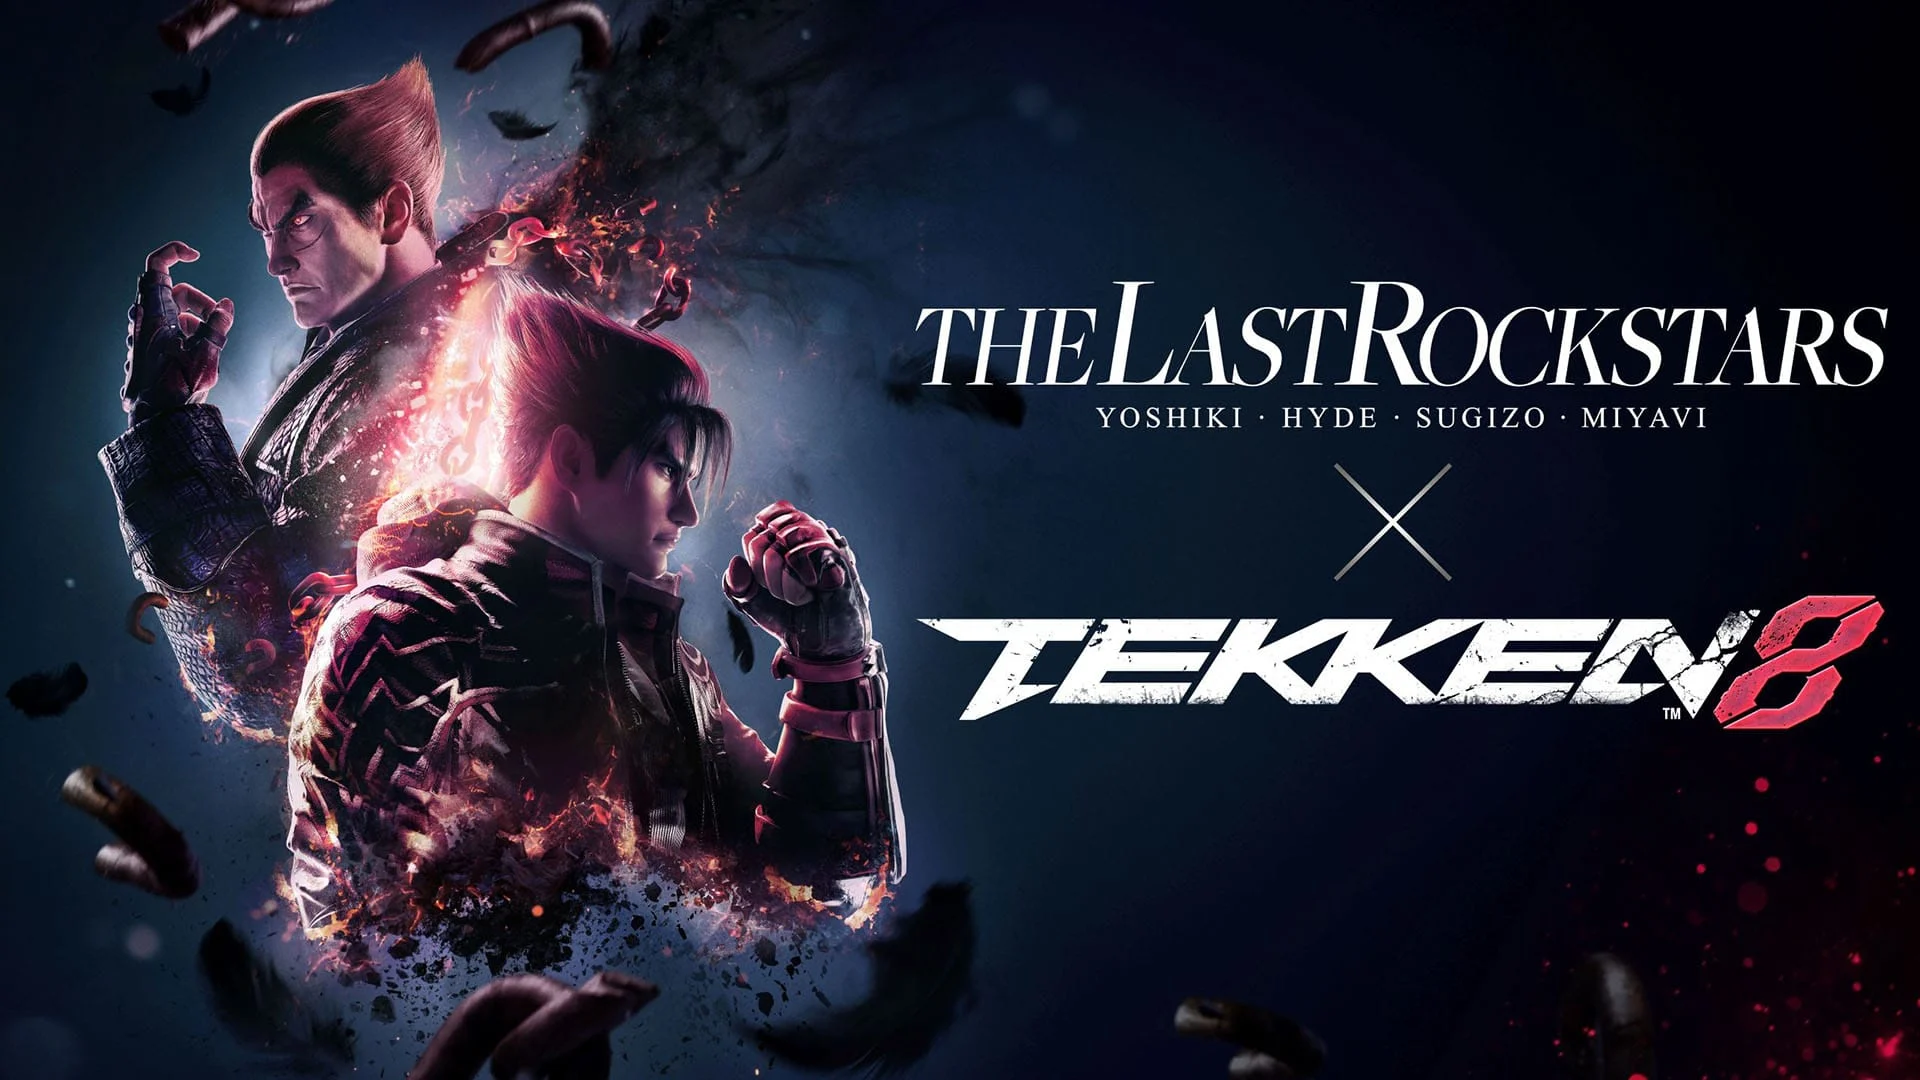 Компания Bandai Namco представила имиджевую песню для файтинга Tekken 8 в исполнении японской группы The Last Rockstars